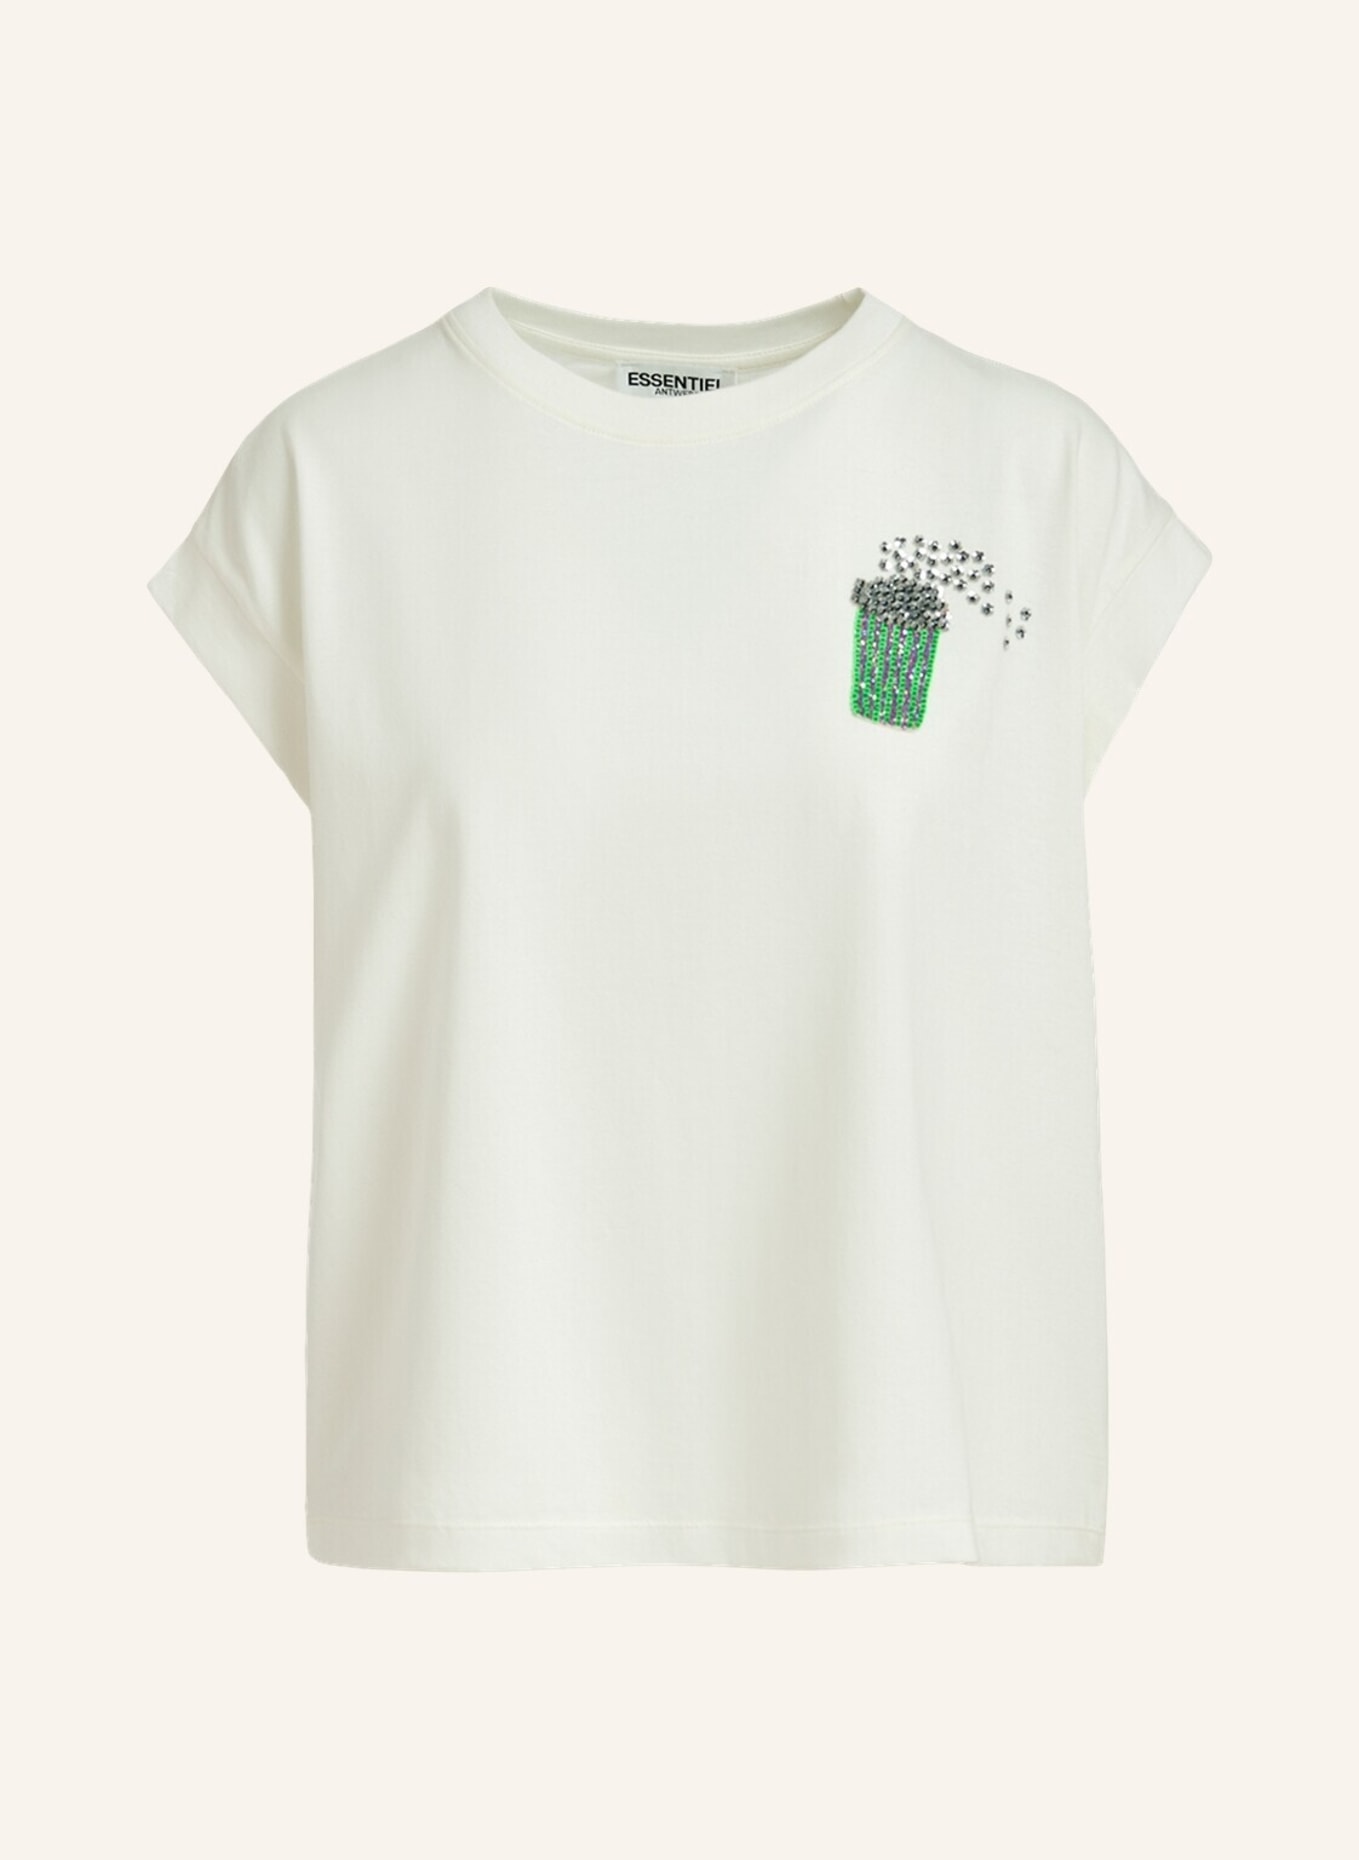 ESSENTIEL ANTWERP T-shirt FAUSTINA, Farbe: WEISS (Bild 1)